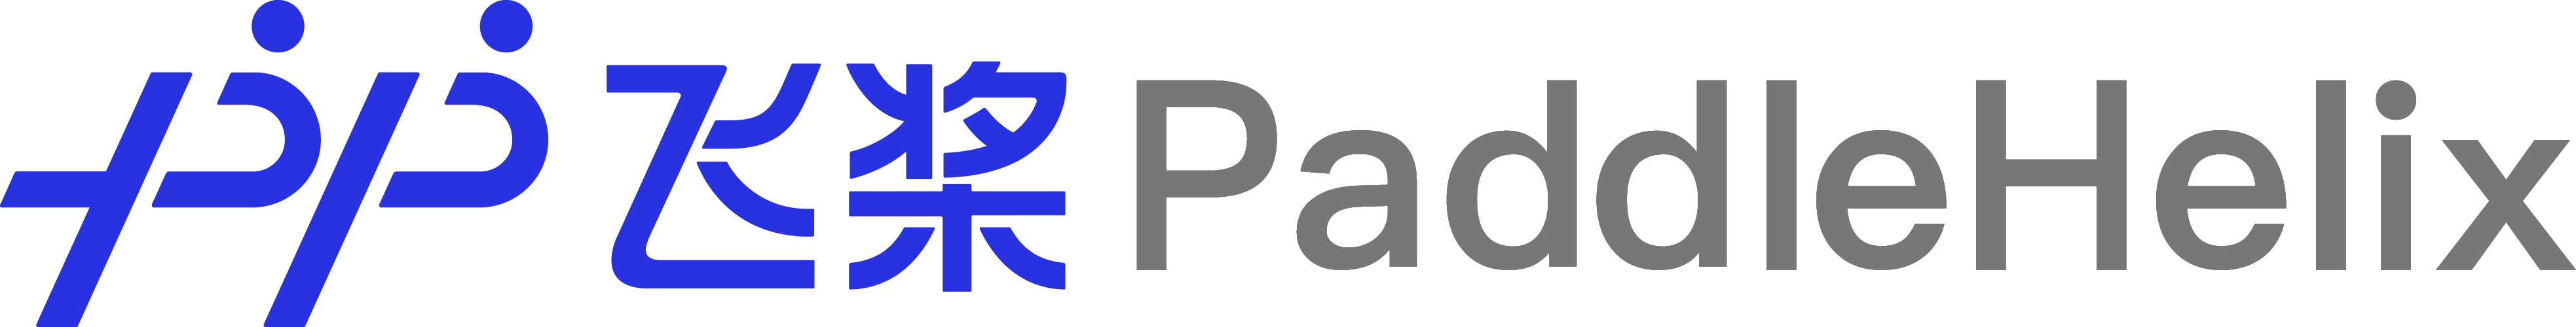 paddlehelix_logo.png